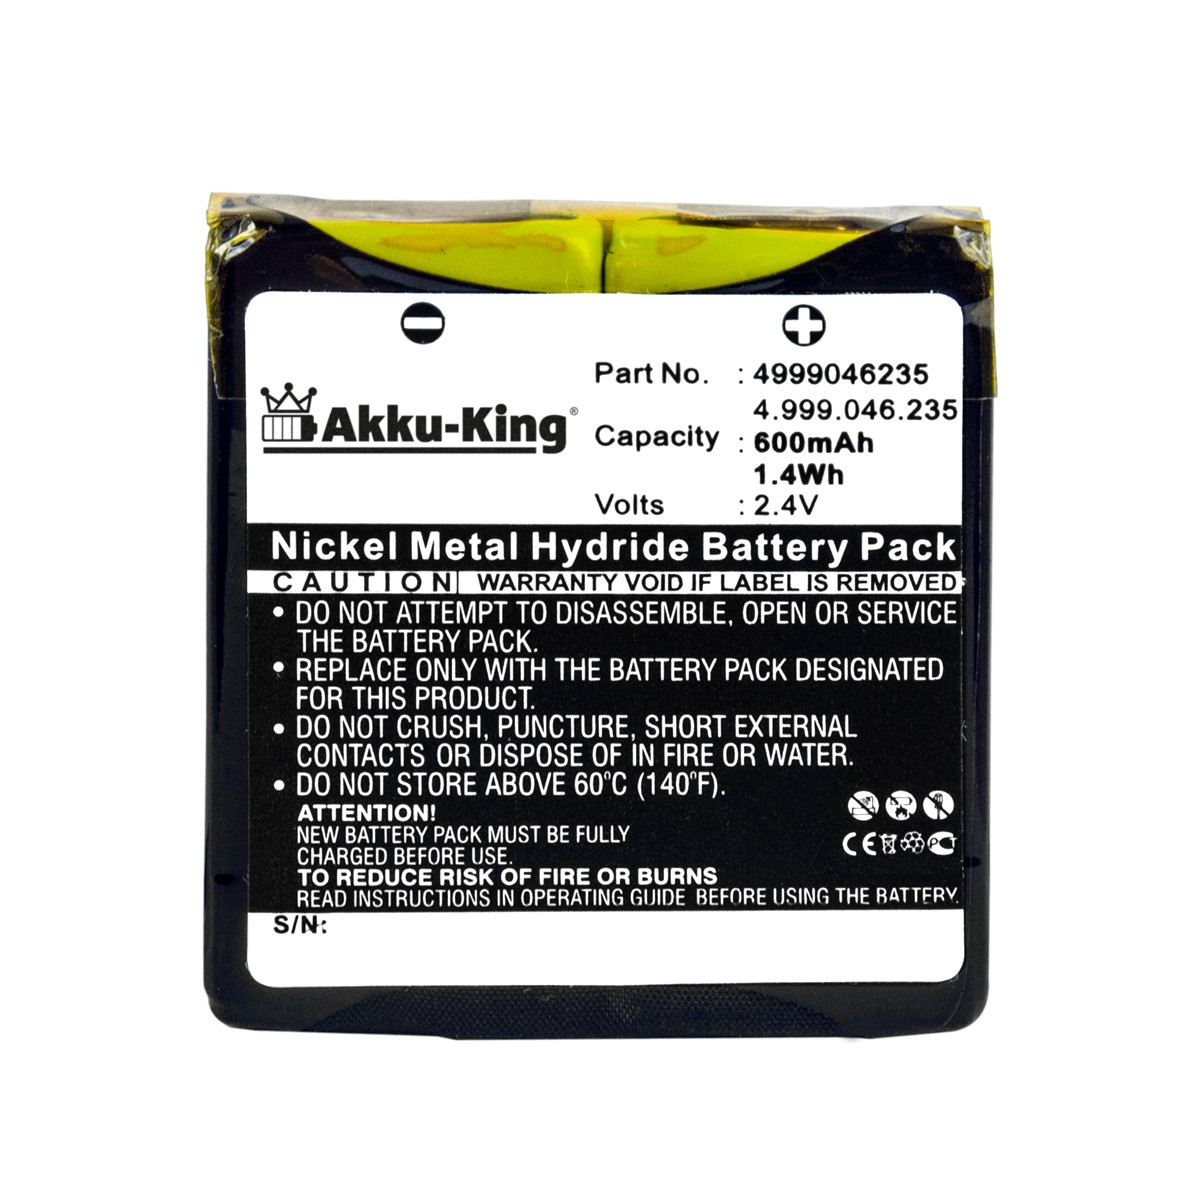 AKKU-KING Akku kompatibel mit 2.4 600mAh Geräte-Akku, Ni-MH Volt, Aastra 4.999.046.235